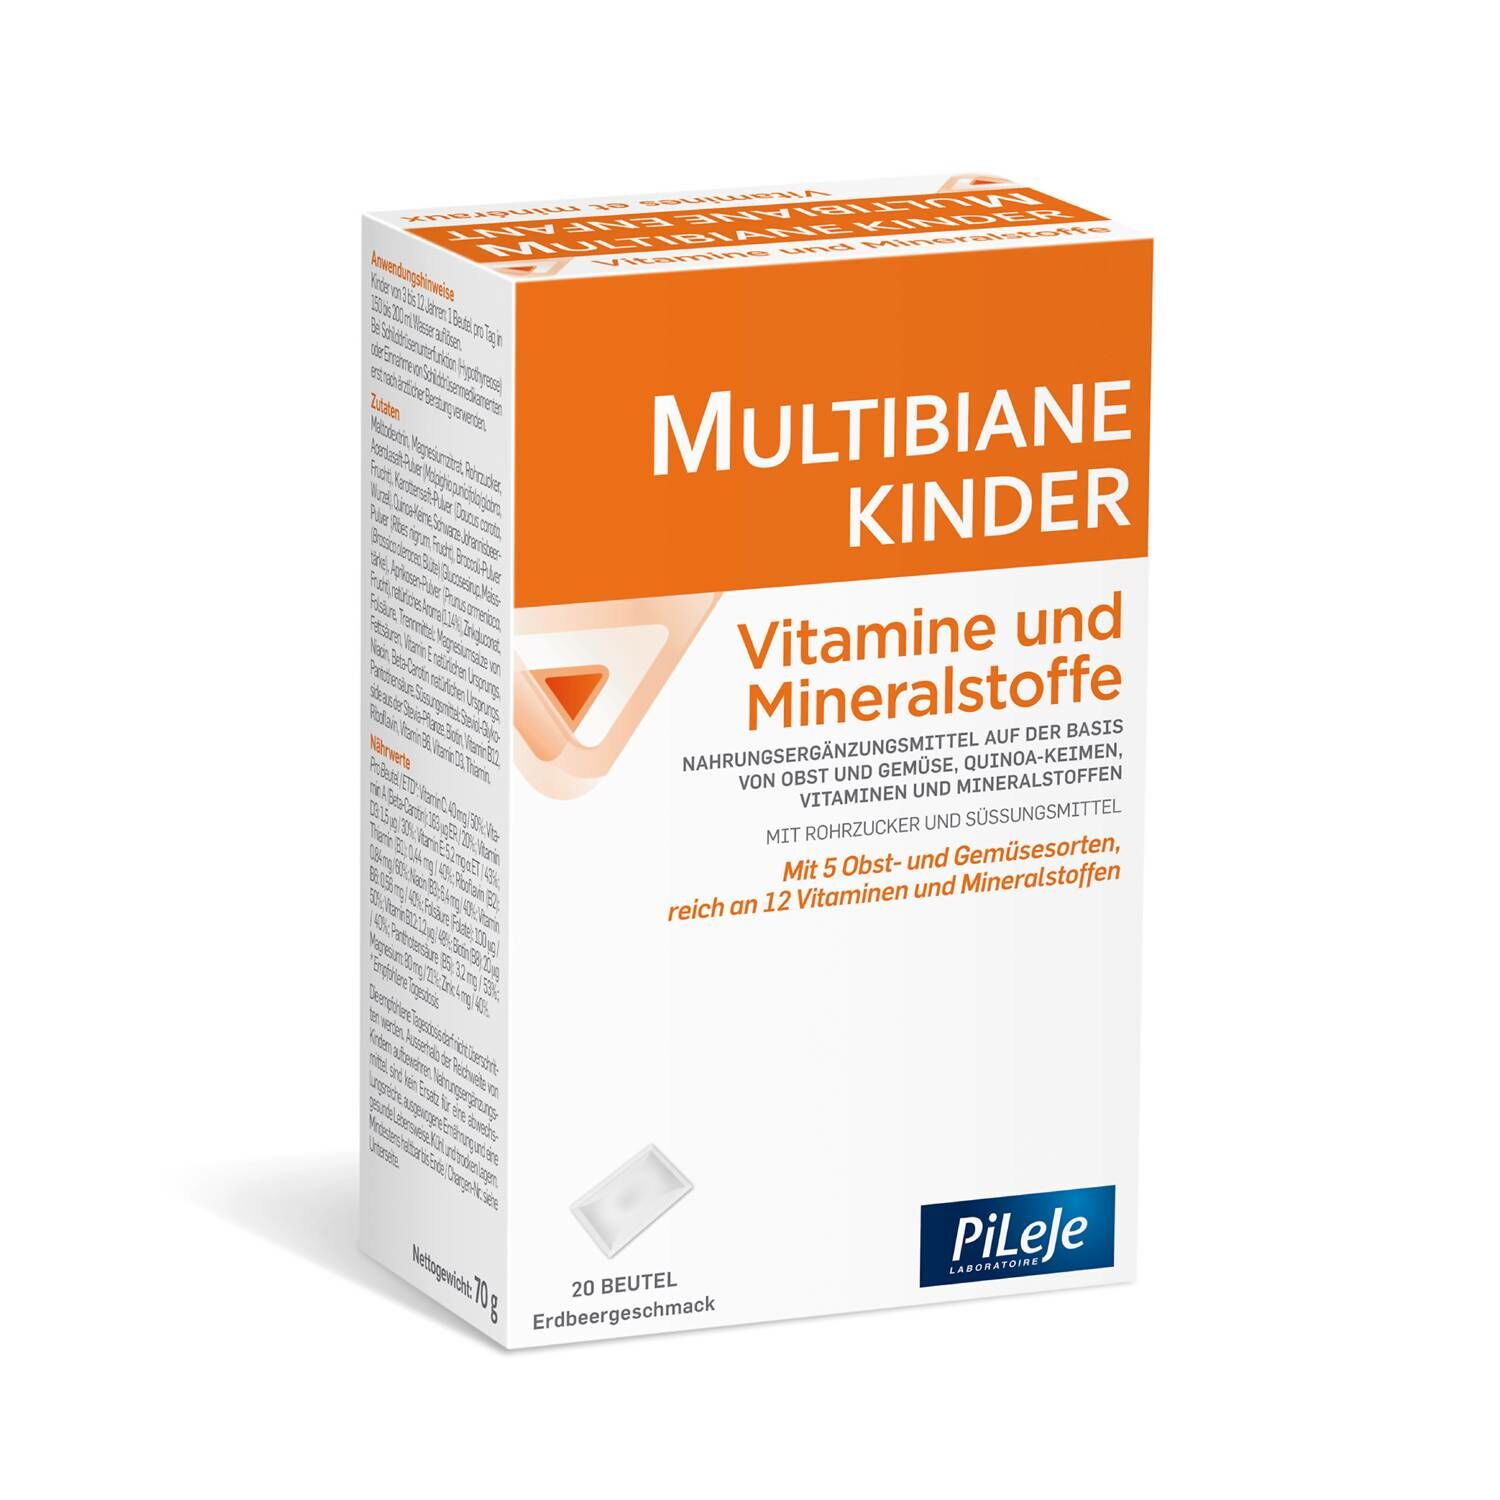 MULTIBIANE Kinder Vitamine und Mineralstoffe Plv Btl 20 Stk jetzt bestellen